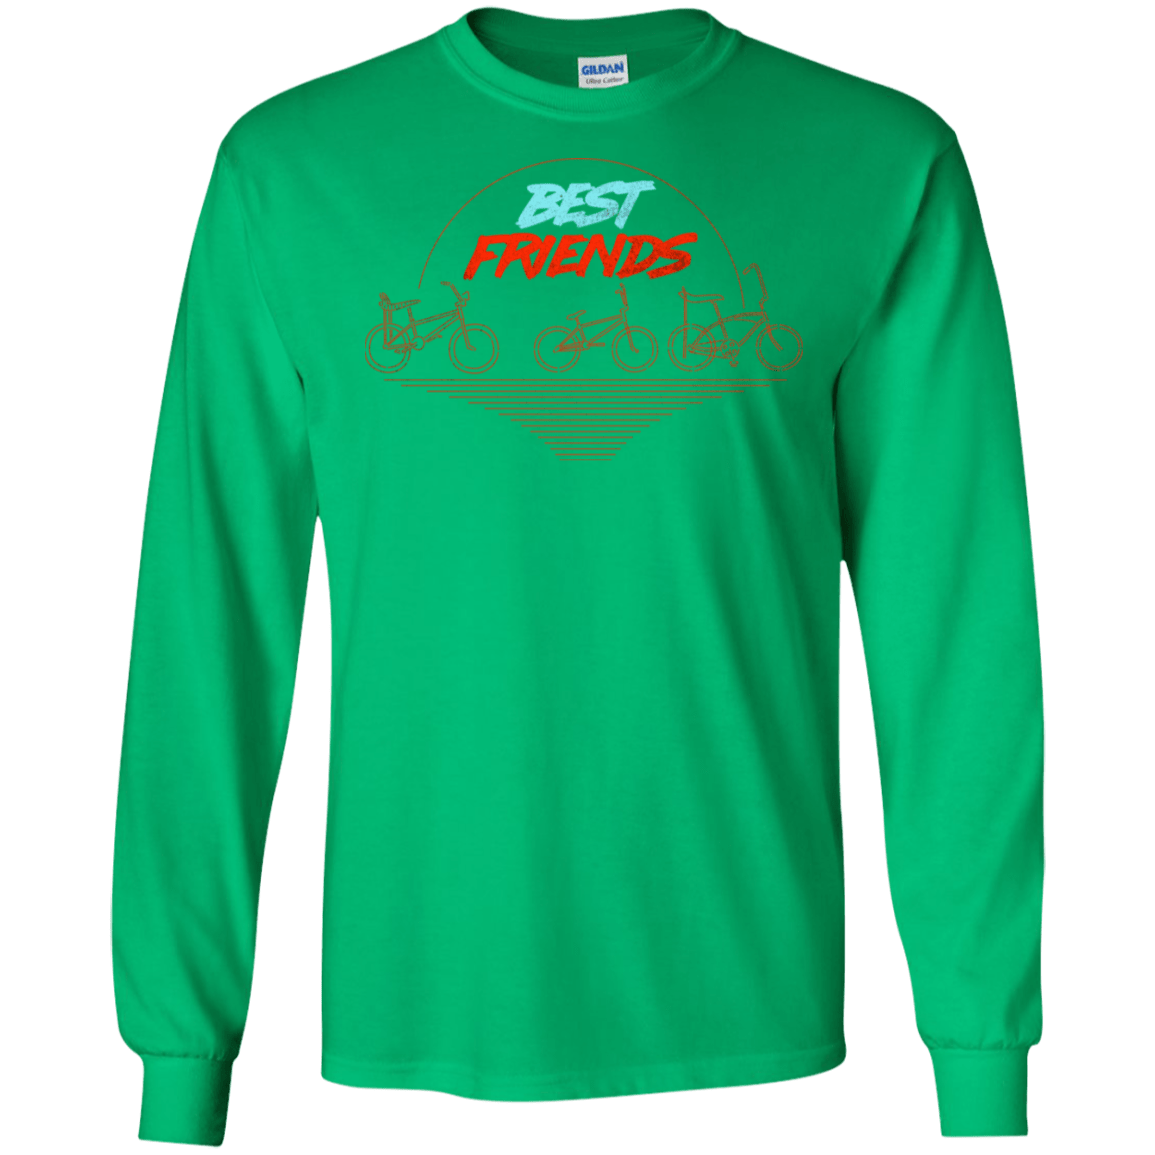 T-Shirts Irish Green / S Best Friends Men's Long Sleeve T-Shirt